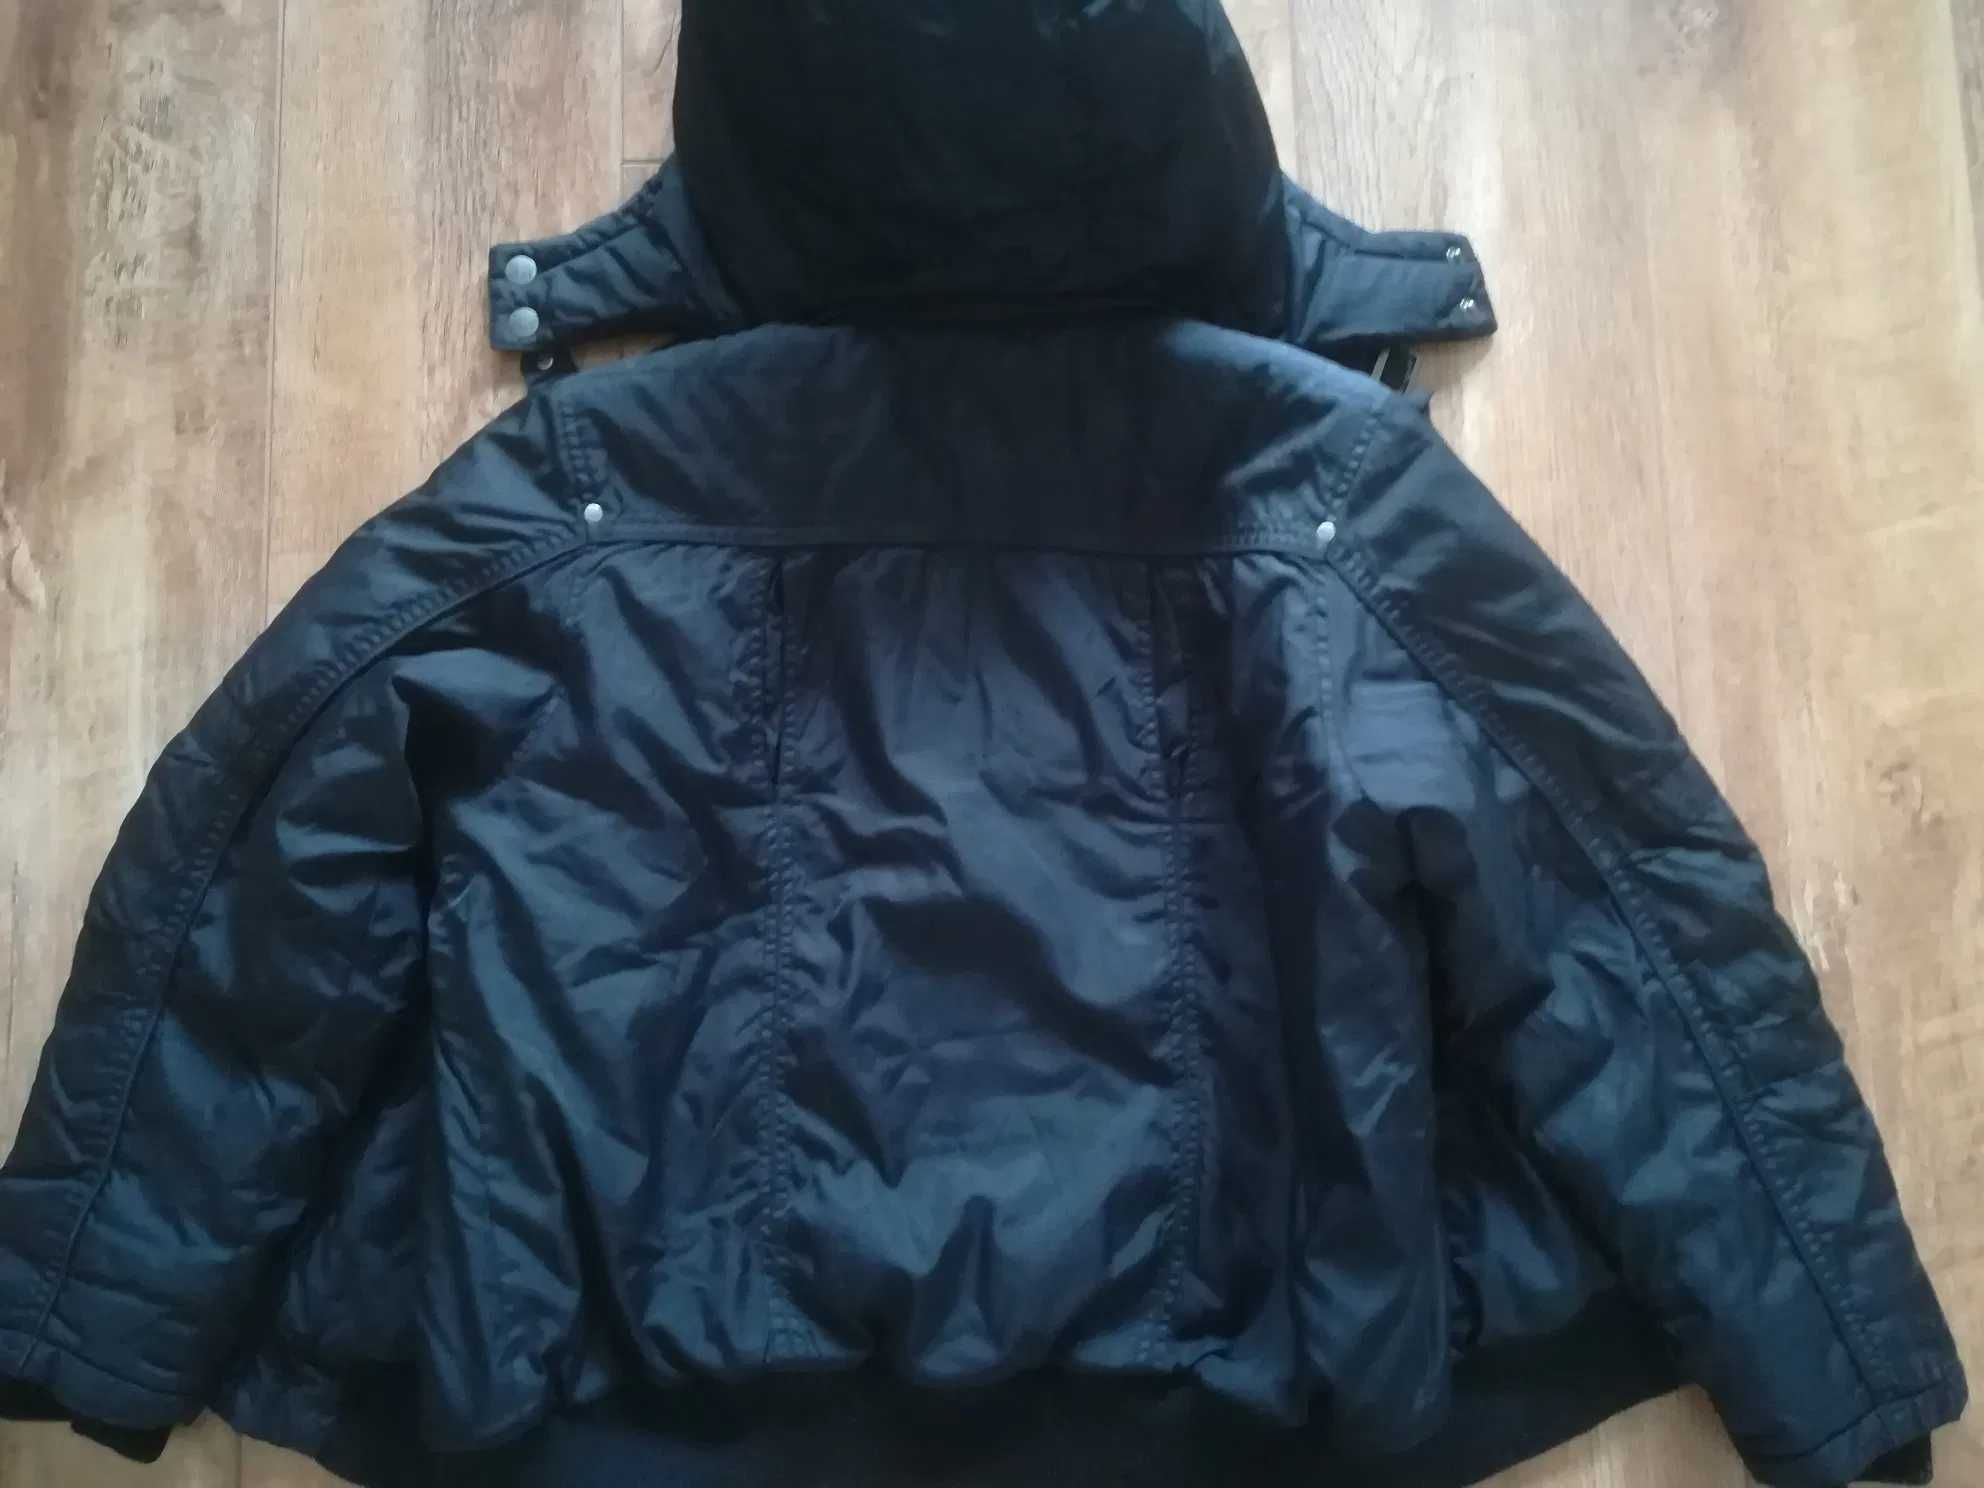 Zimowa kurtka Reserved 164 dla chłopca